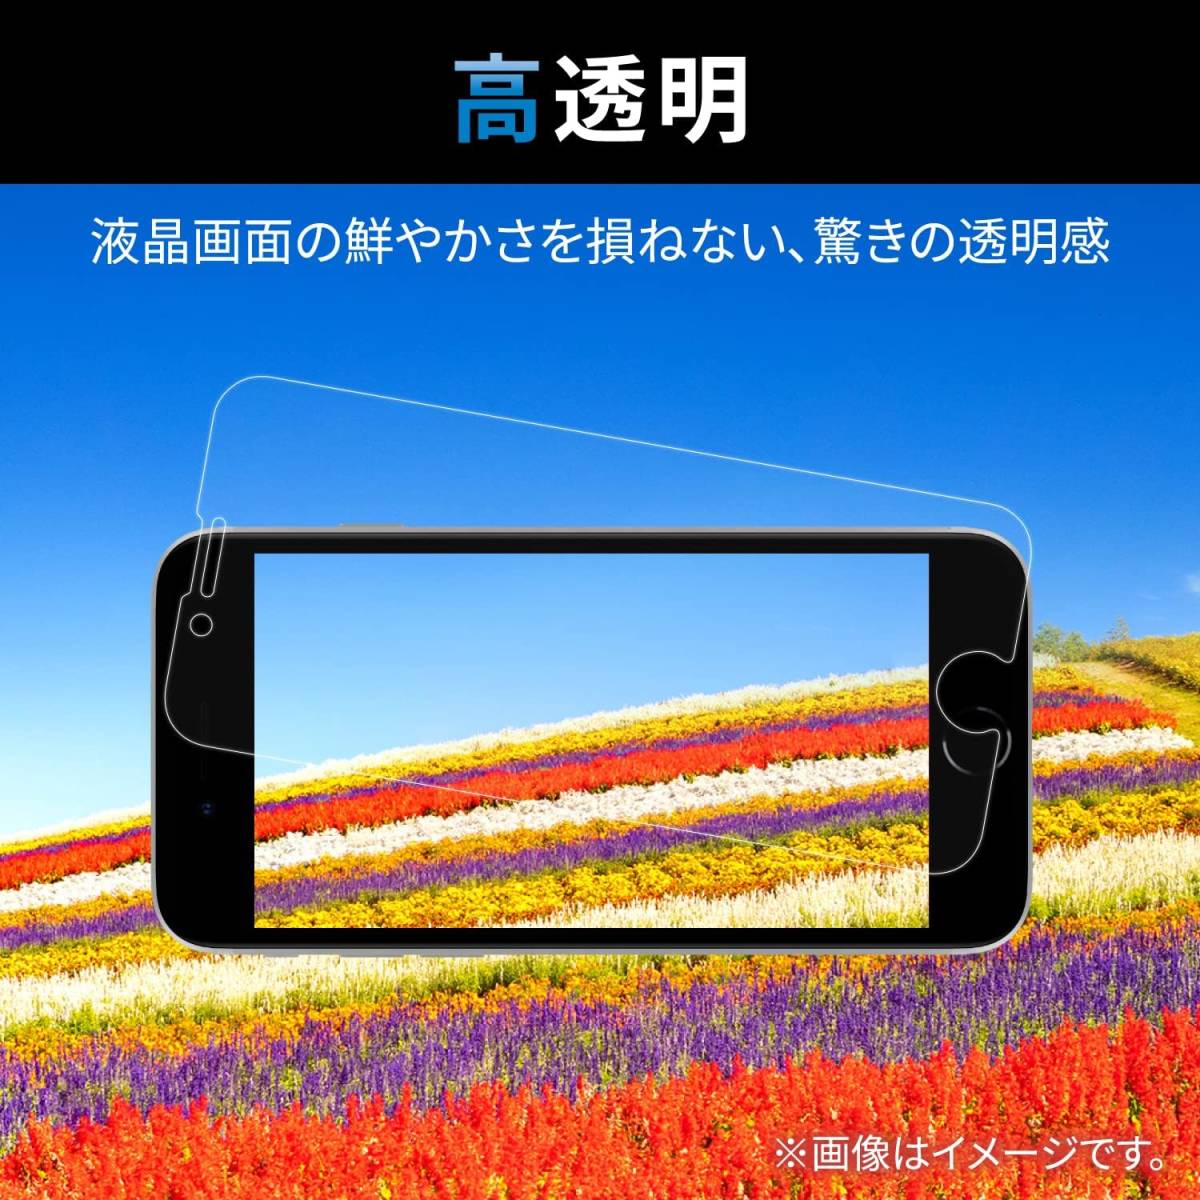 エレコム iPhone SE3 SE2 8 7 6 6s ゲーミング強化ガラスフィルム 指すべり3倍 フルカバー 液晶全面保護 第3世代 第2世代 ブラック 790